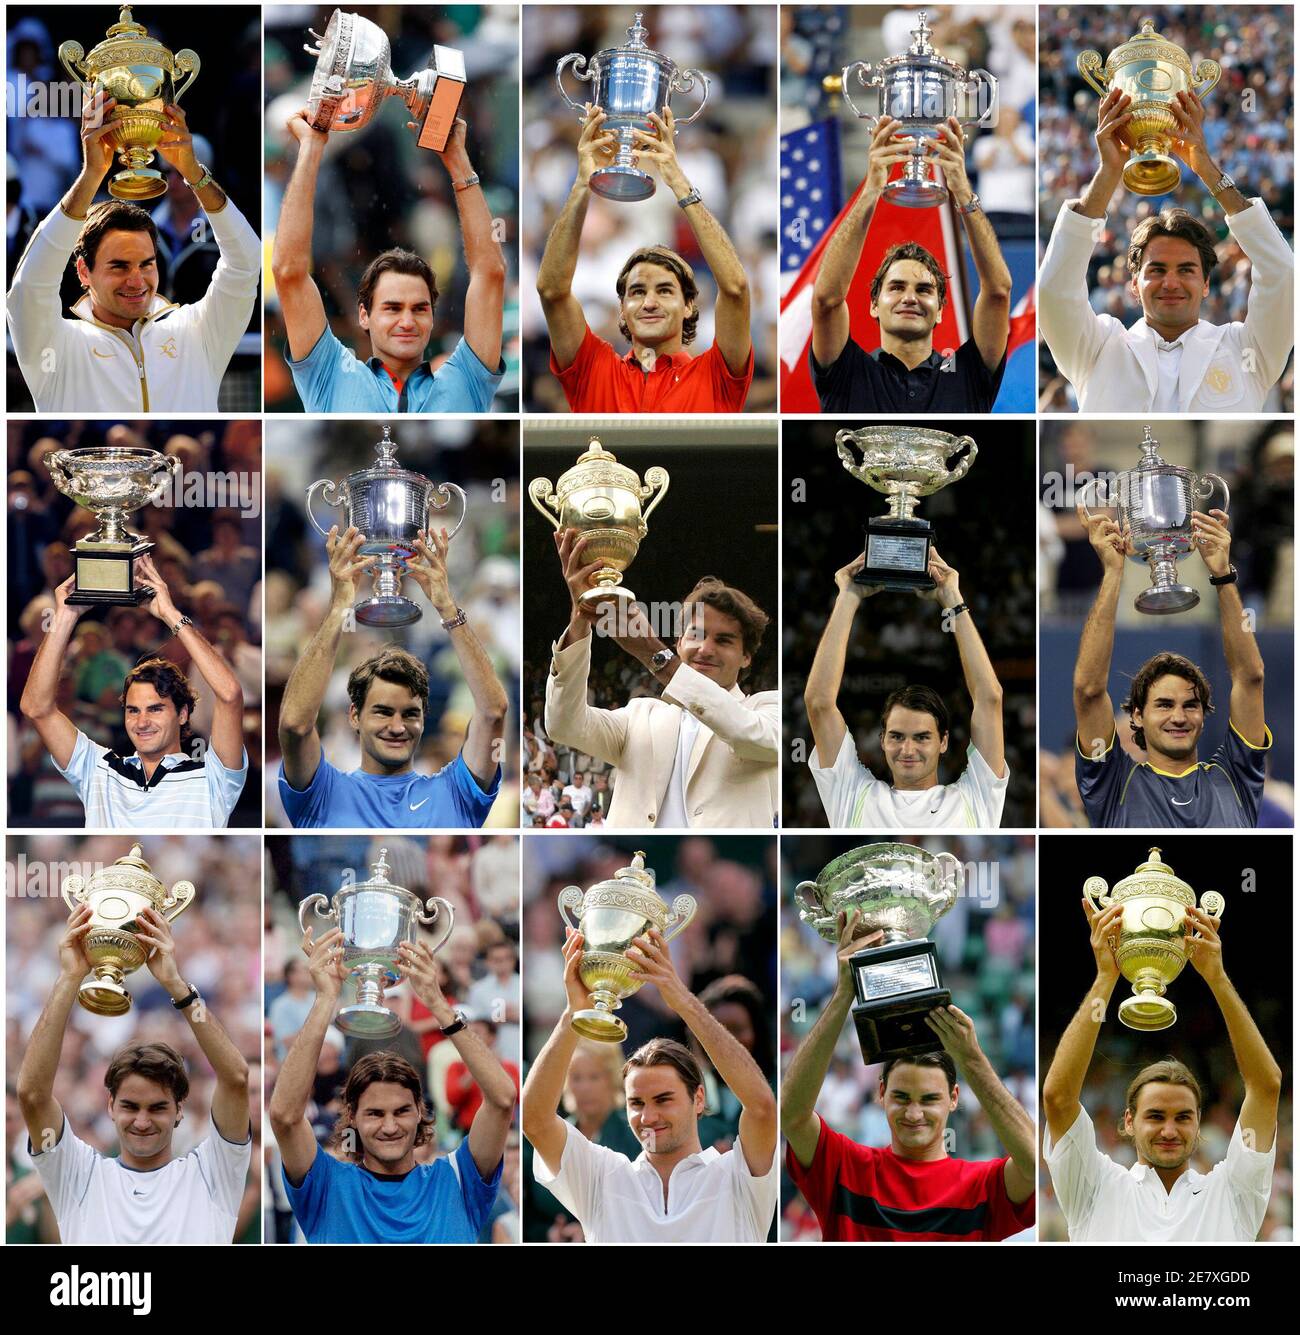 Roger Federer de Suisse détient chacun de ses 14 trophées de tennis Grand Chelem dans cette image combinée à partir de photos de fichier. (Du bas R au haut L) Wimbledon 2003, Australie 2004, Wimbledon 2004, États-Unis 2004, Wimbledon 2005, États-Unis 2005, Australie 2006, Wimbledon 2006, États-Unis 2006, Australie 2007, Wimbledon 2007, États-Unis 2007, États-Unis 2008, français 2009. REUTERS/PERSONNEL/FICHIERS (IMAGES DE TENNIS DE SPORT DU JOUR) Banque D'Images